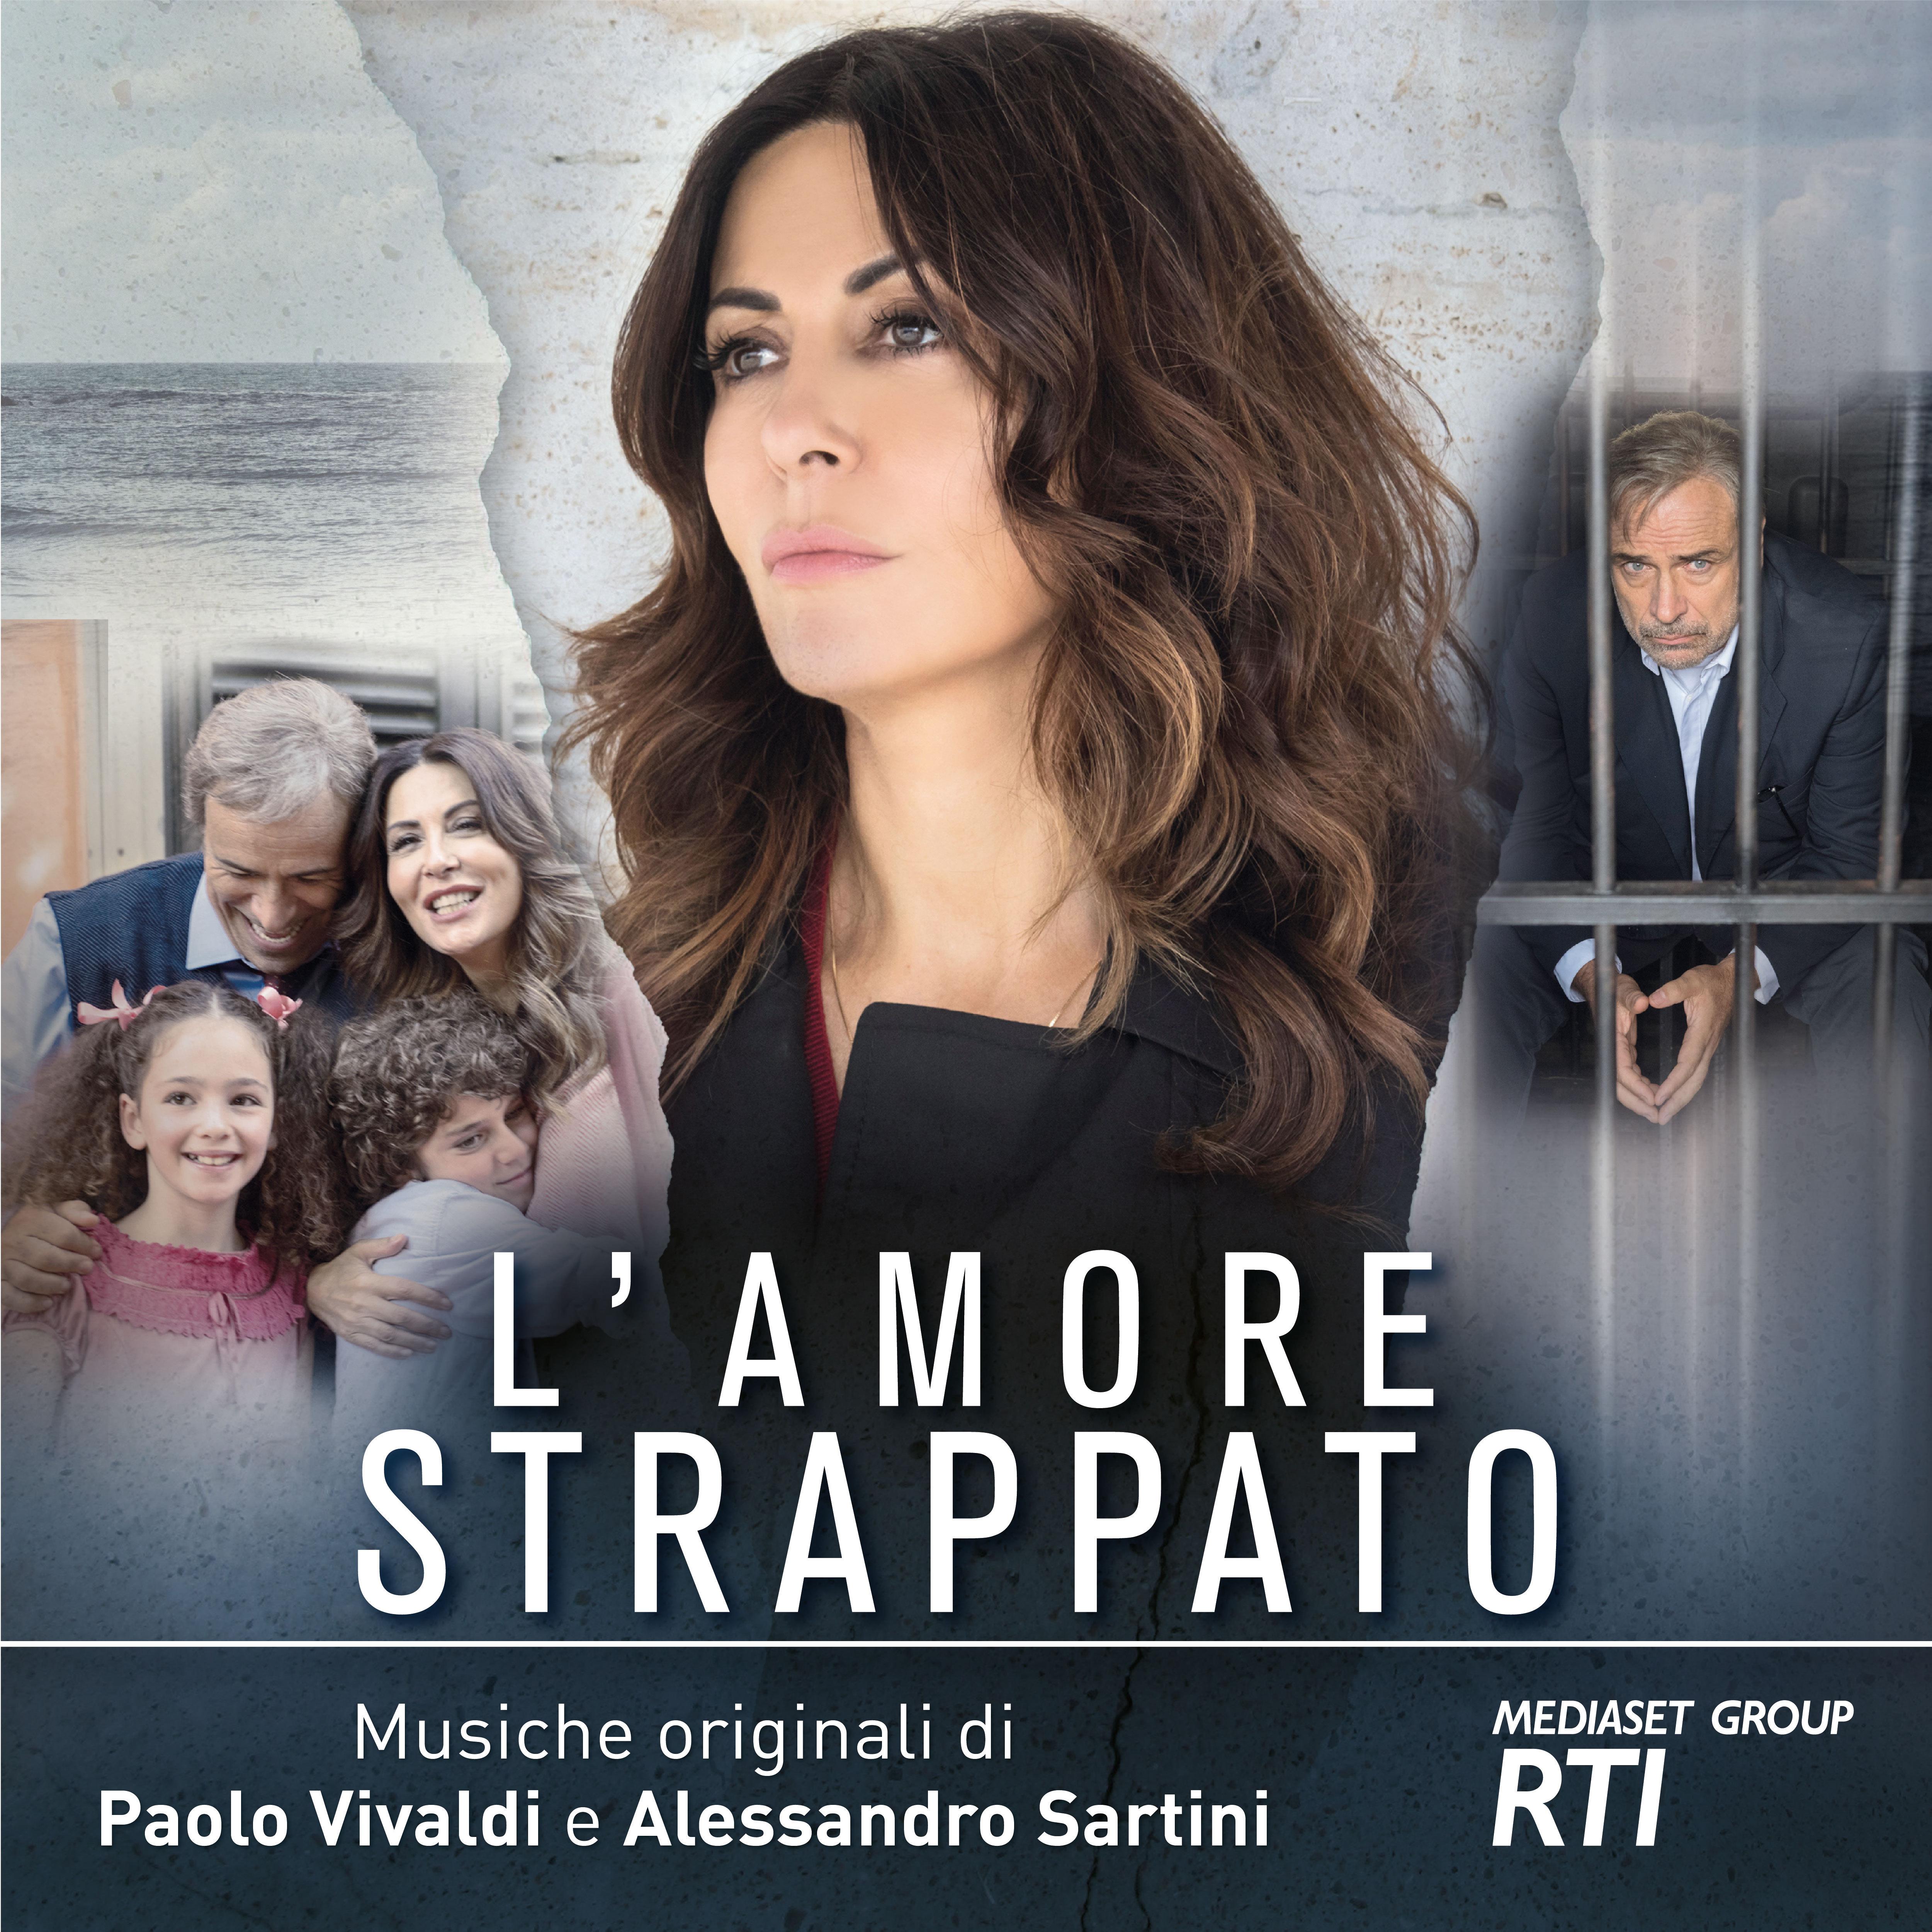 L'amore strappato专辑